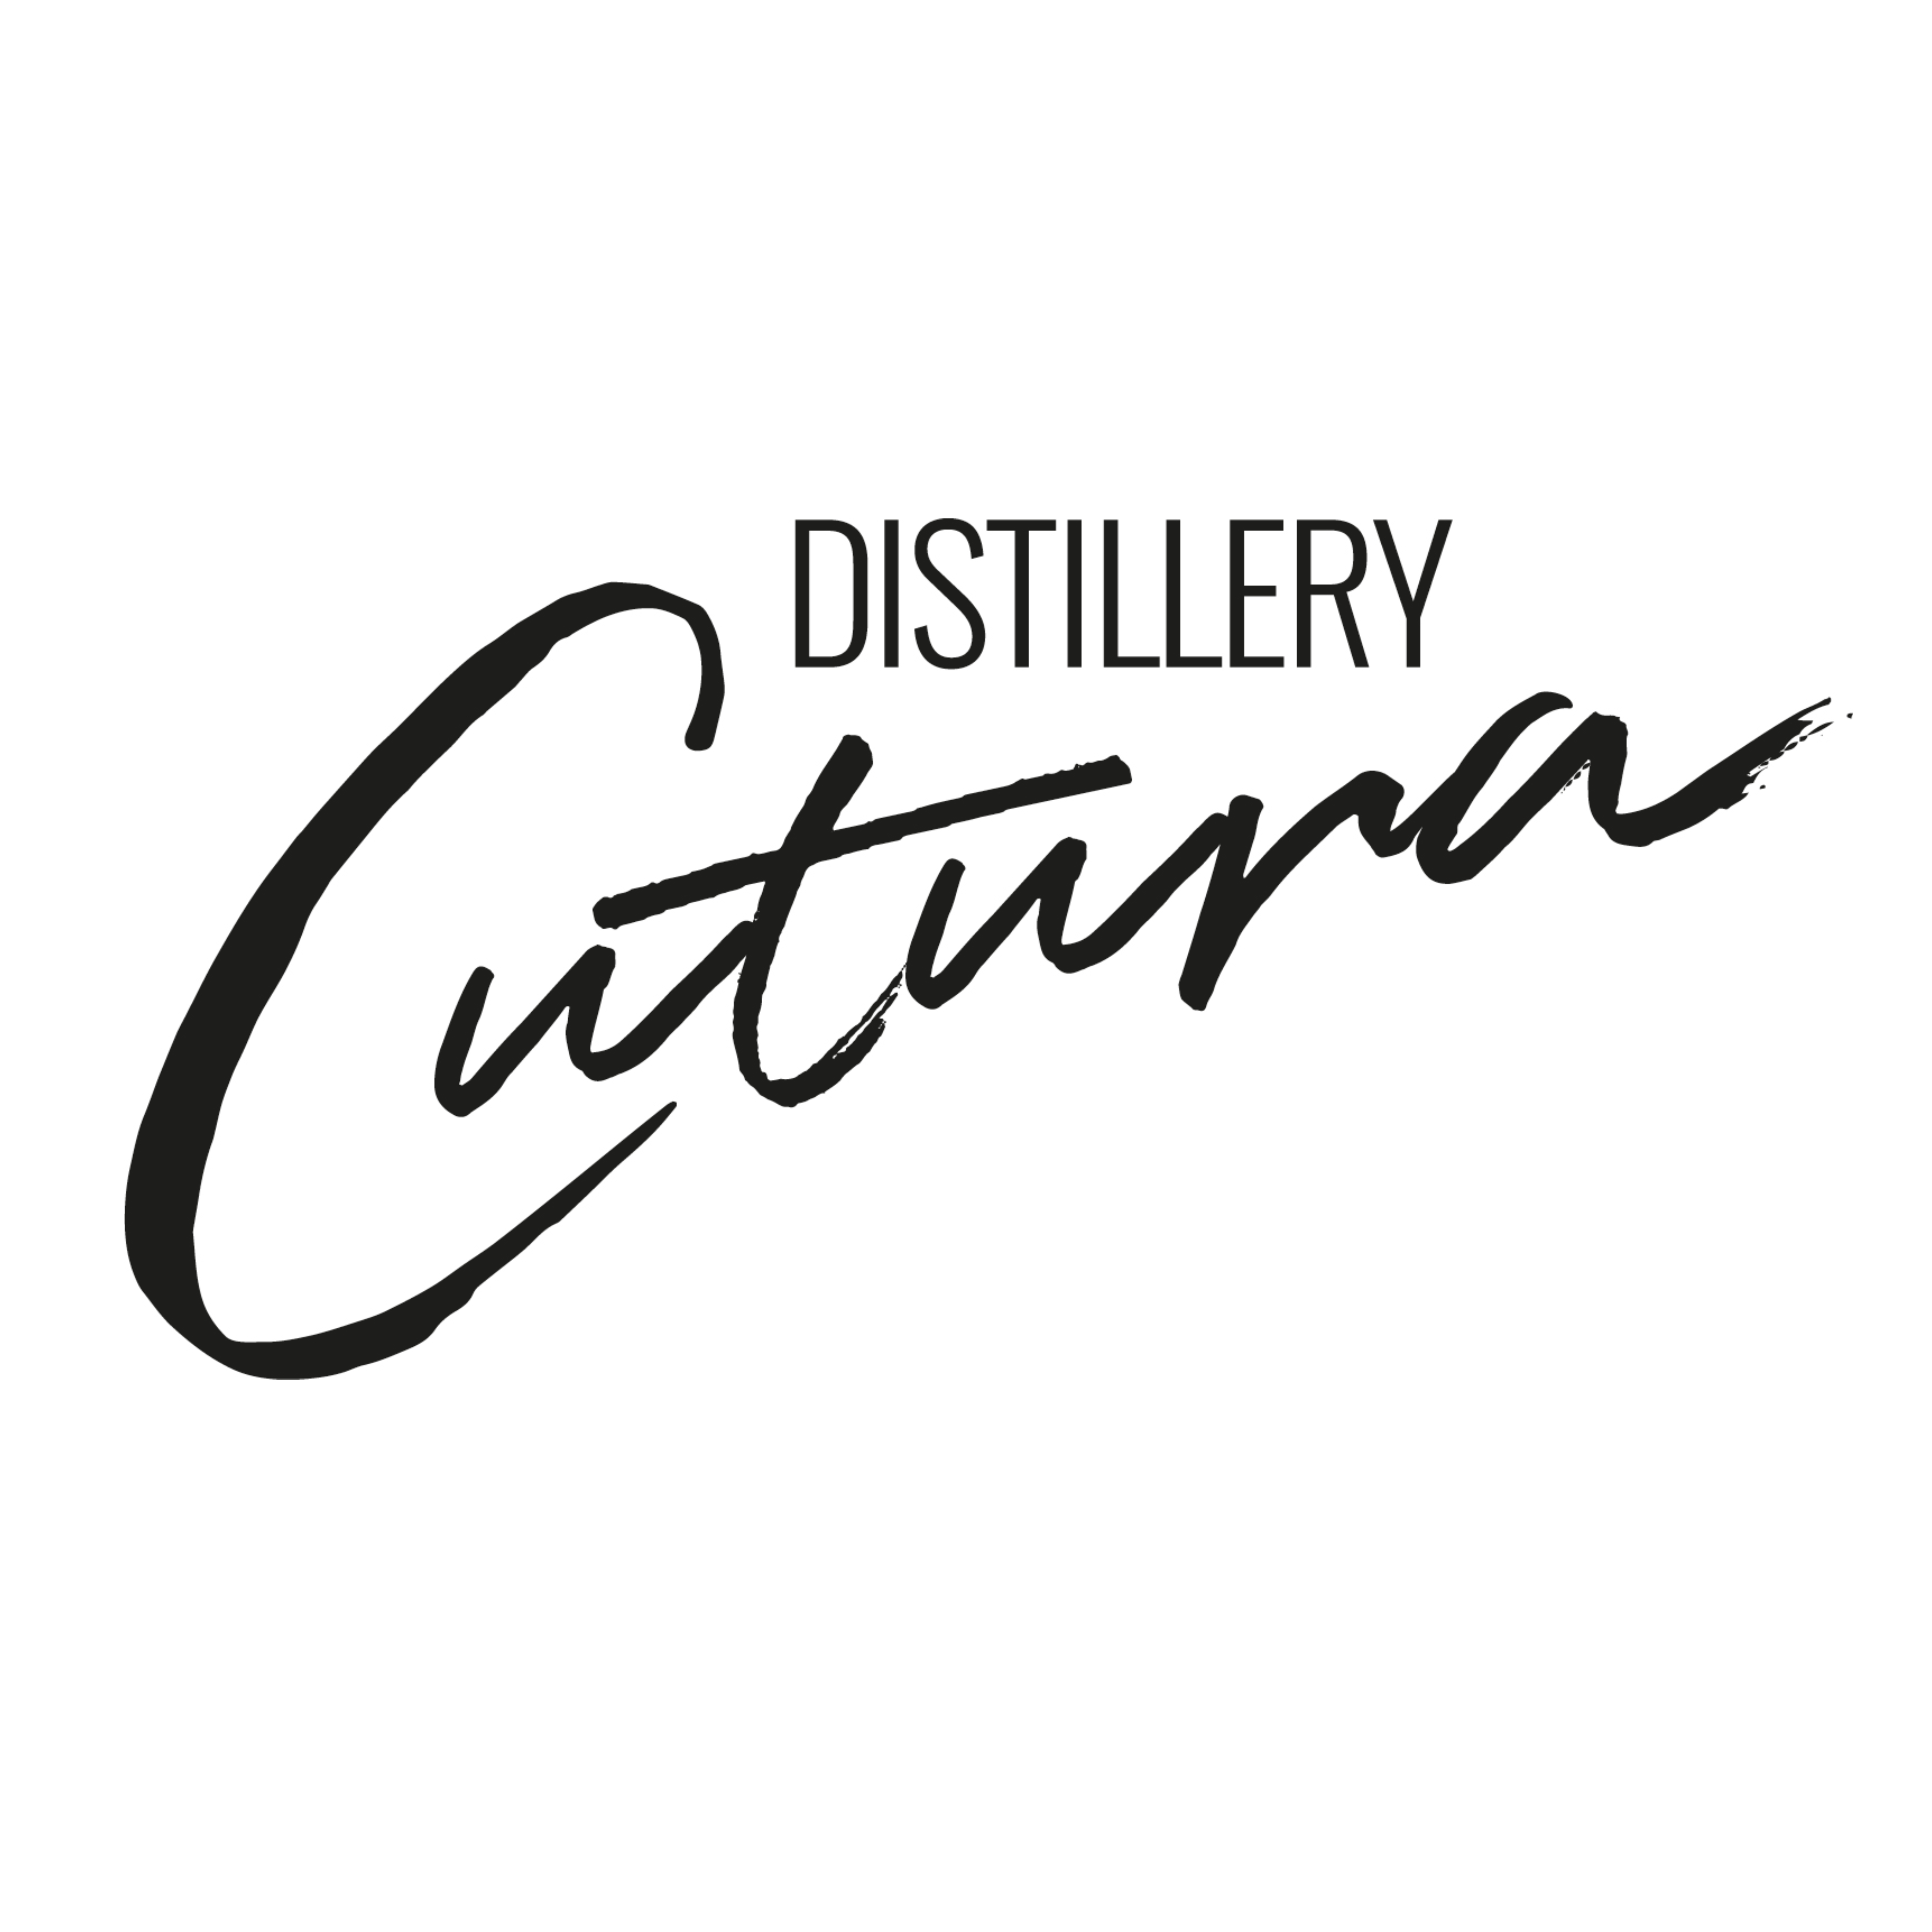 Distillery Cutura 